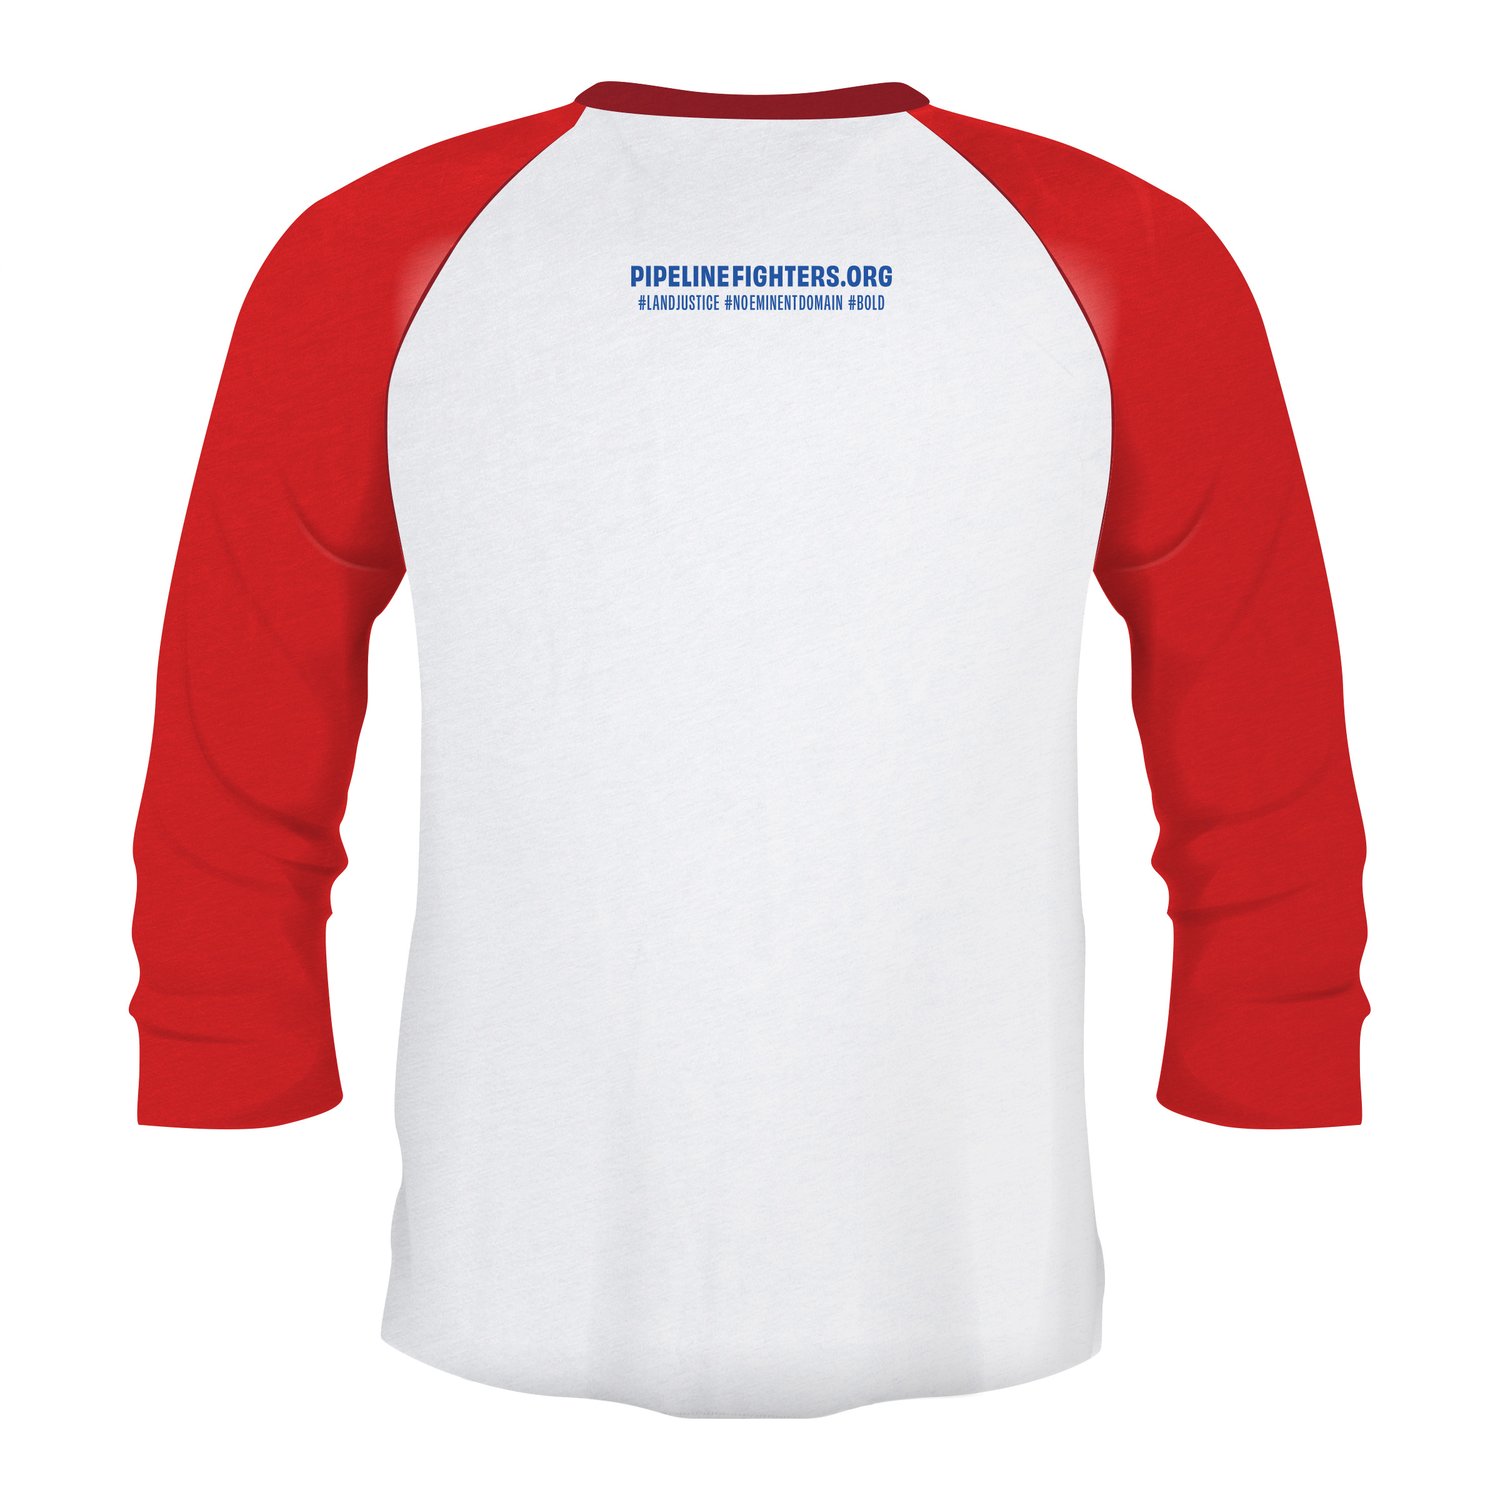 Image of Nebraska Pipeline Fighter t-shirt (Red 3/4 sleeve)